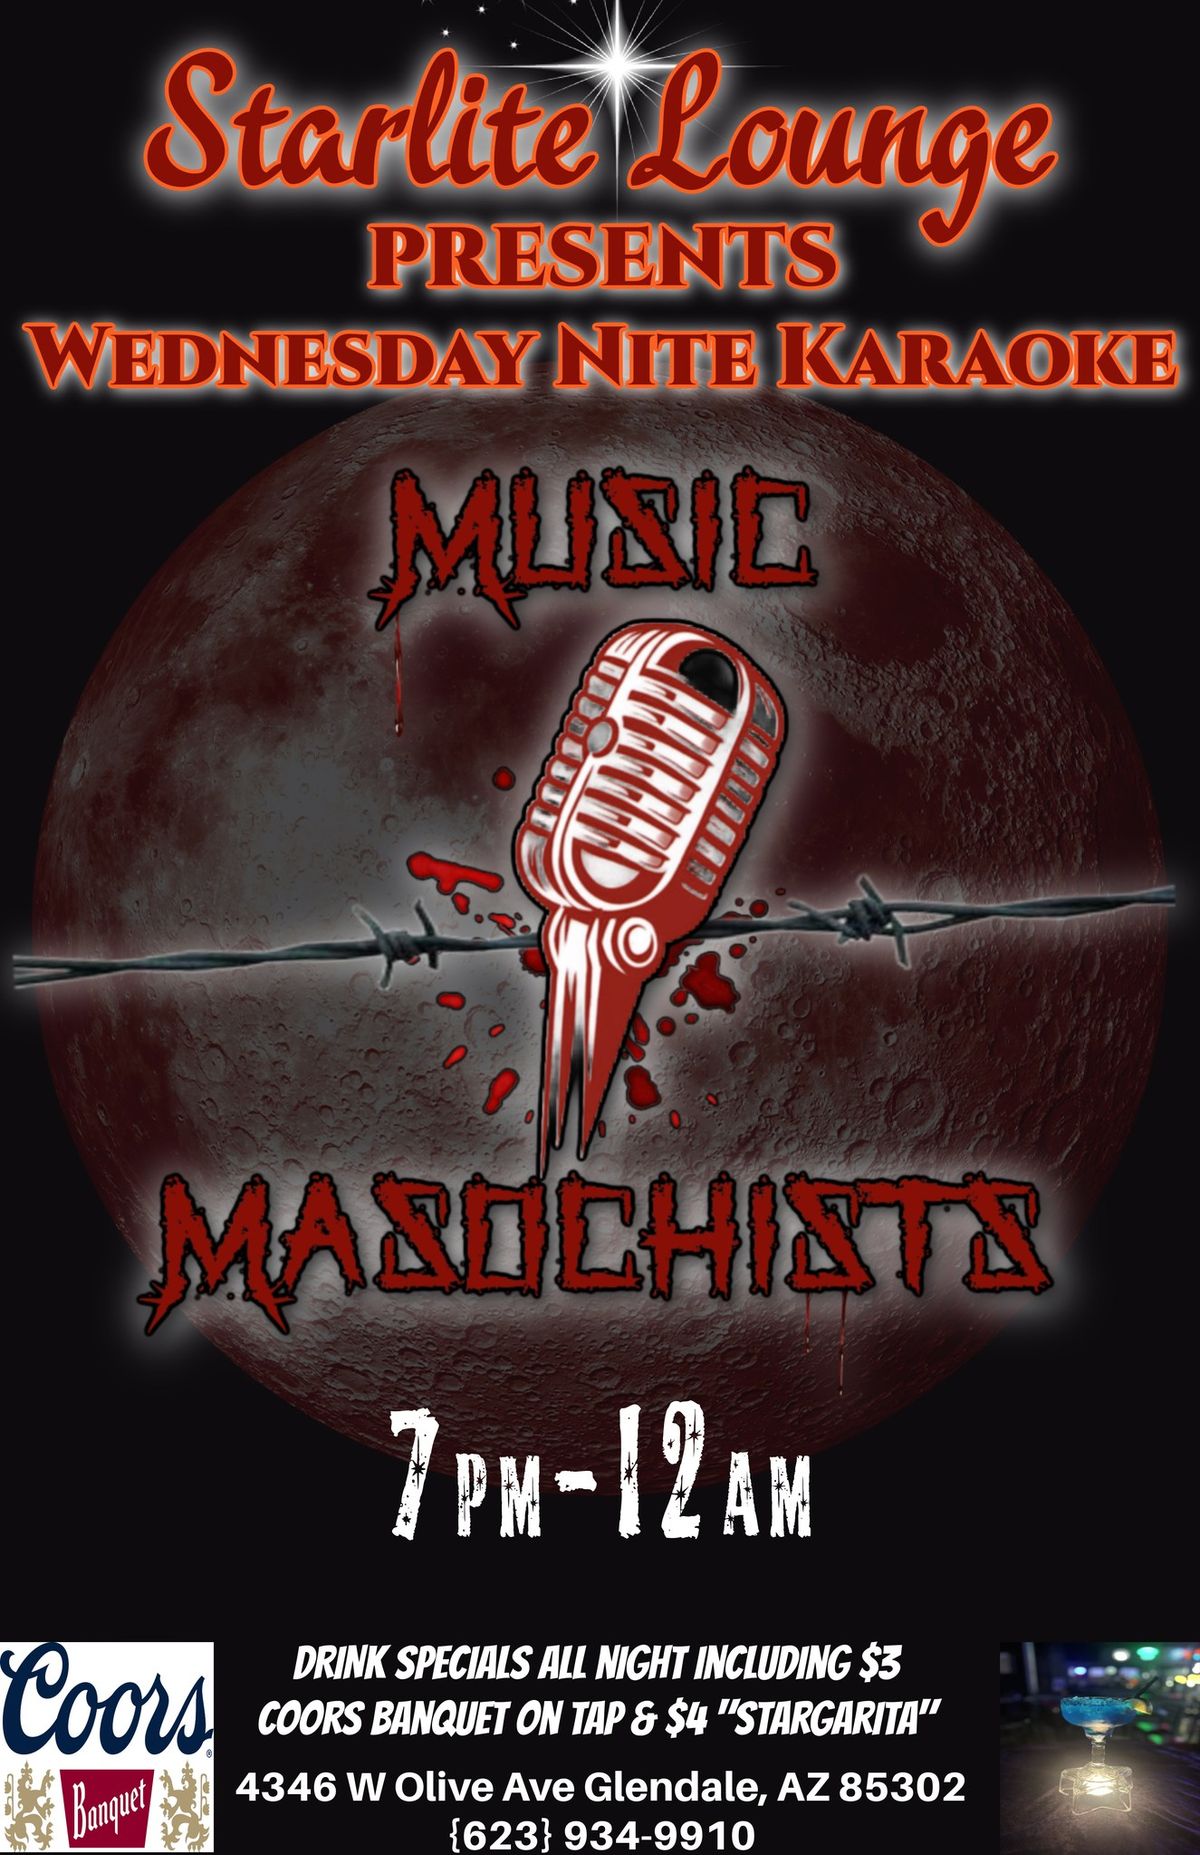 Wednesday Nite Karaoke with Music Masochists